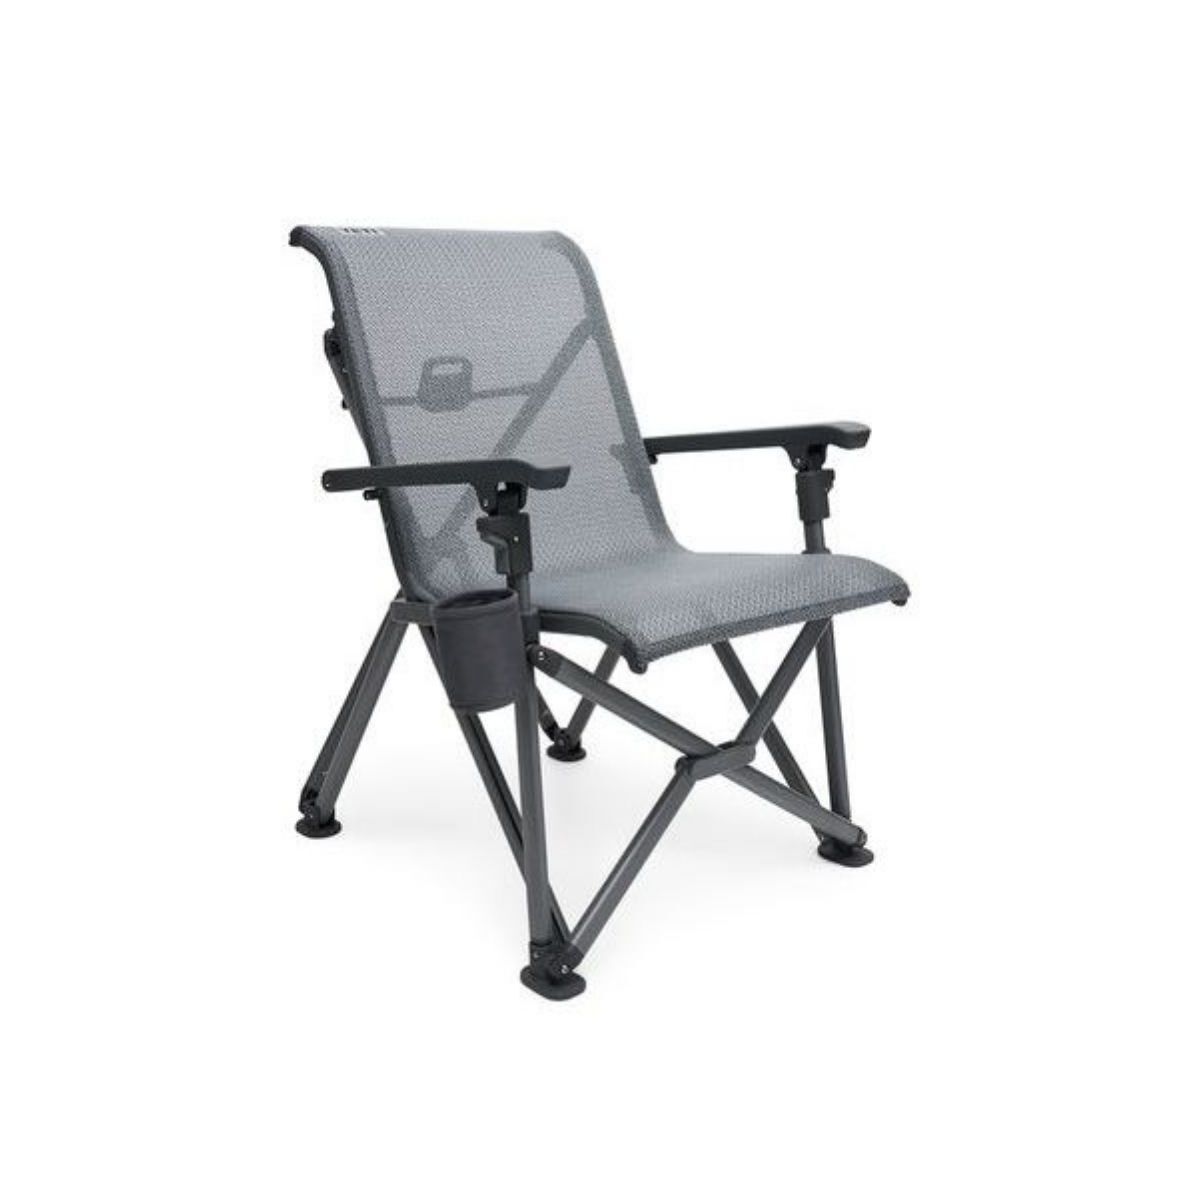 Yeti Trailhead Camp Chair - Retkituoli